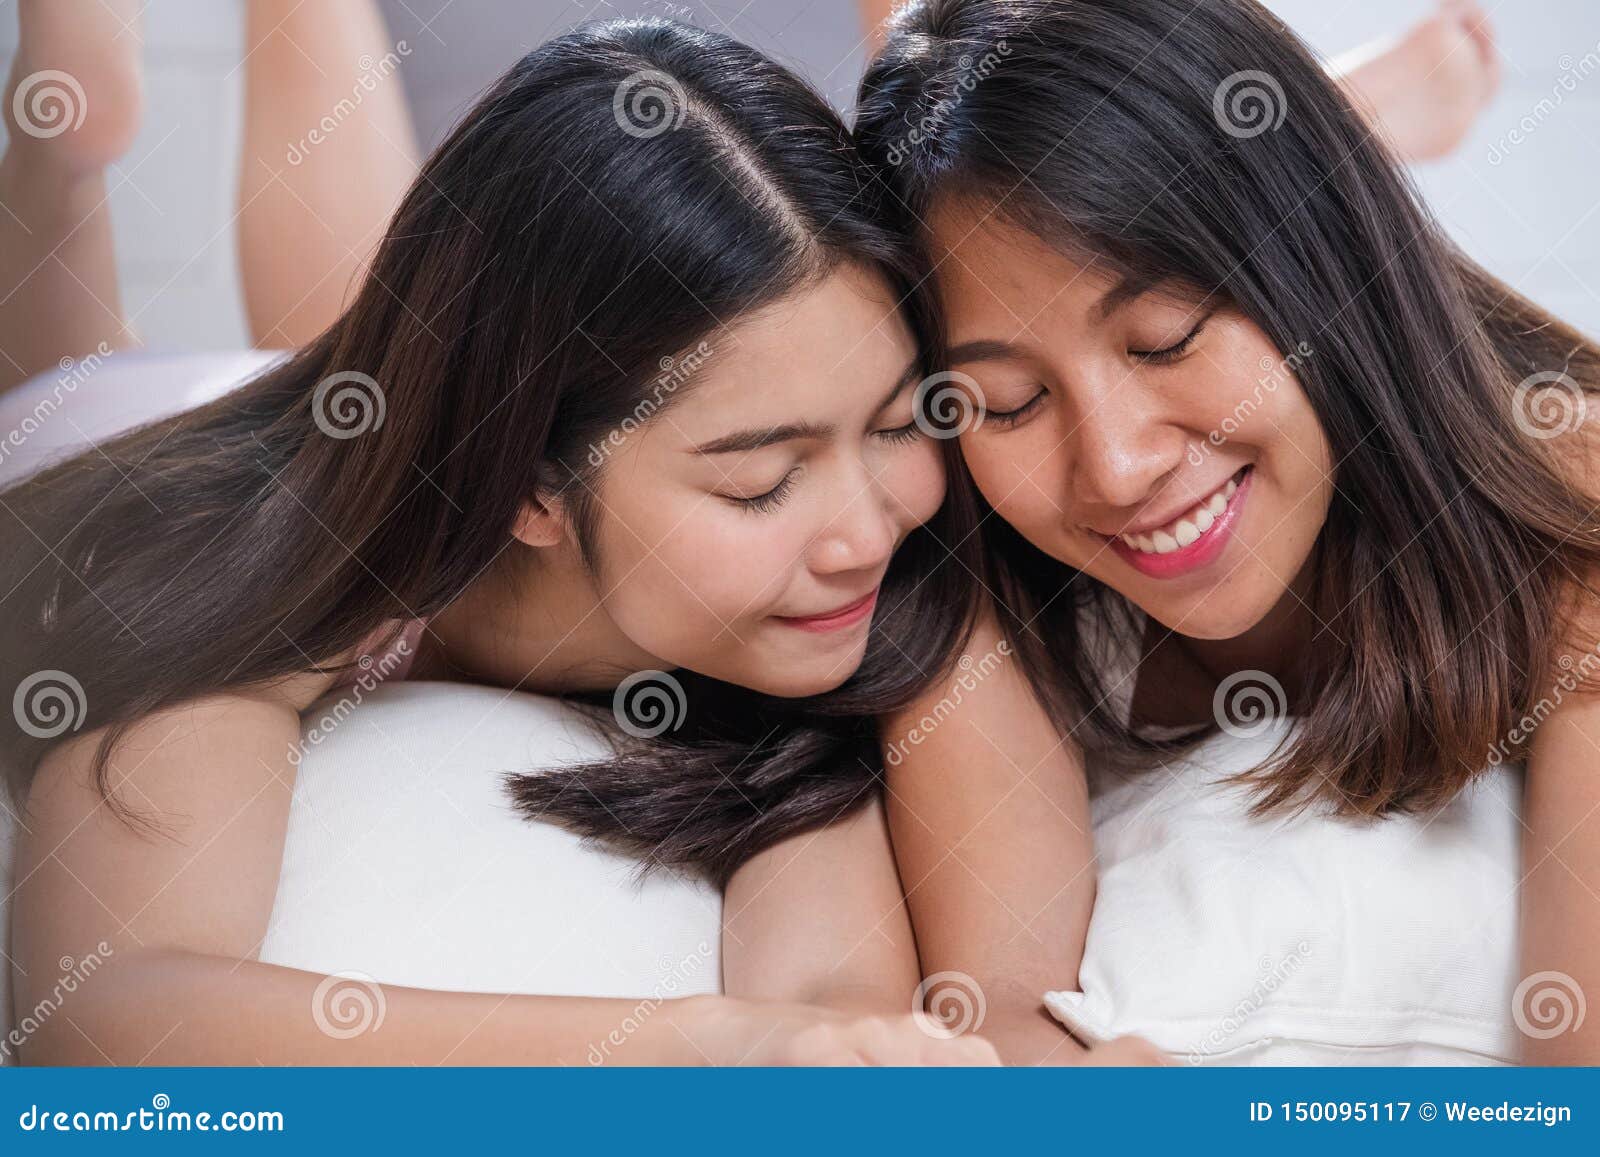 Cute Asian Teen Lesbian